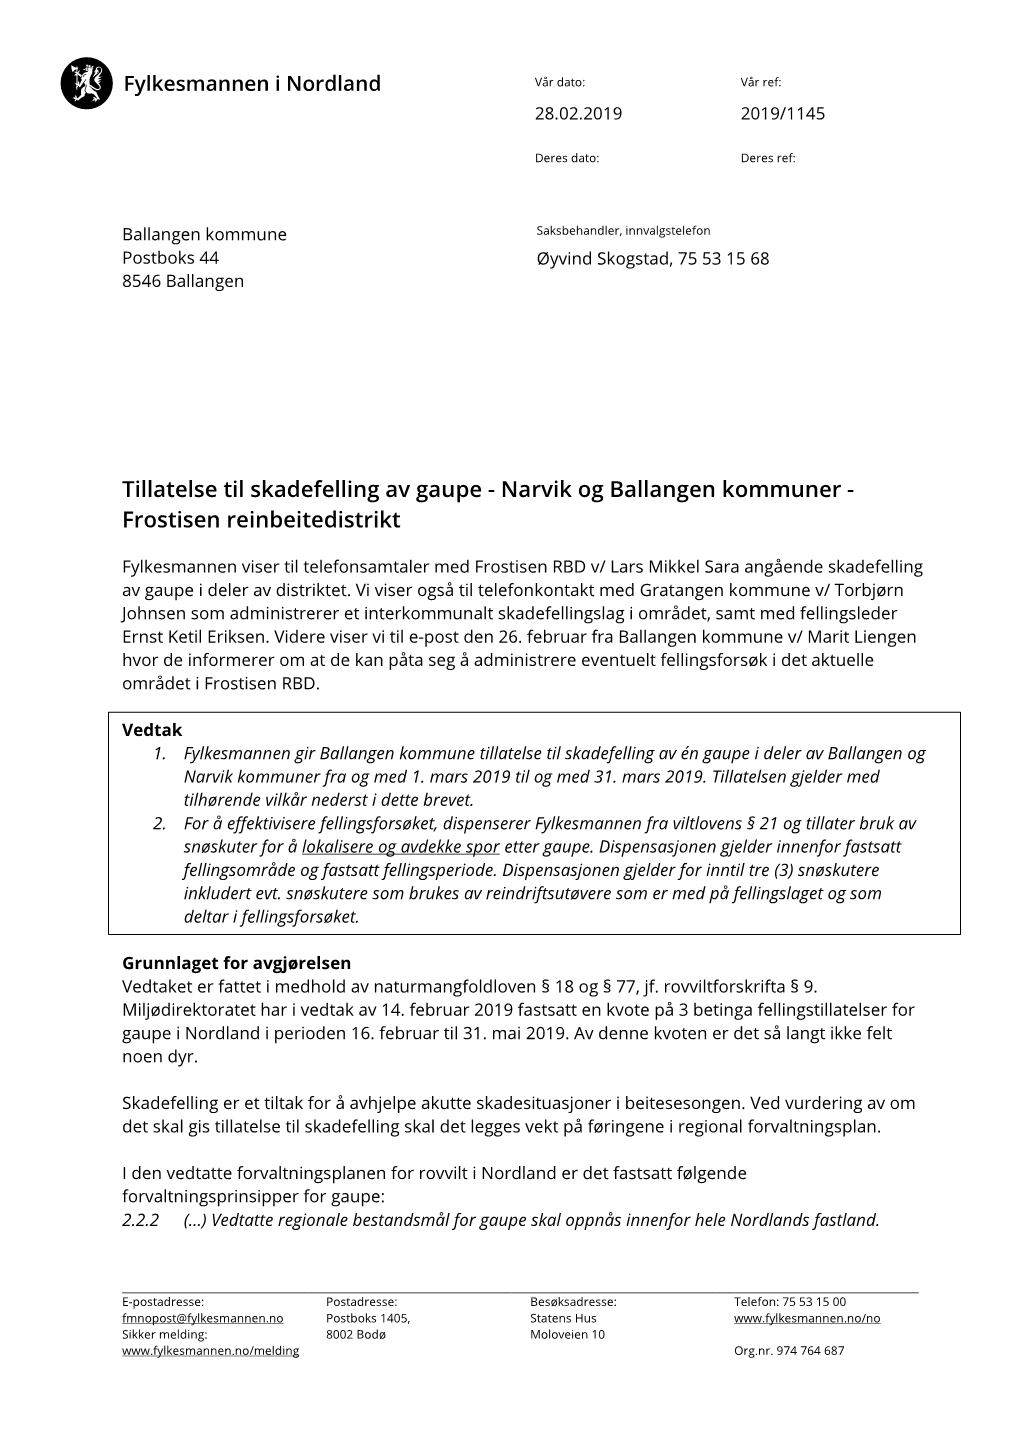 Tillatelse Til Skadefelling Av Gaupe - Narvik Og Ballangen Kommuner - Frostisen Reinbeitedistrikt